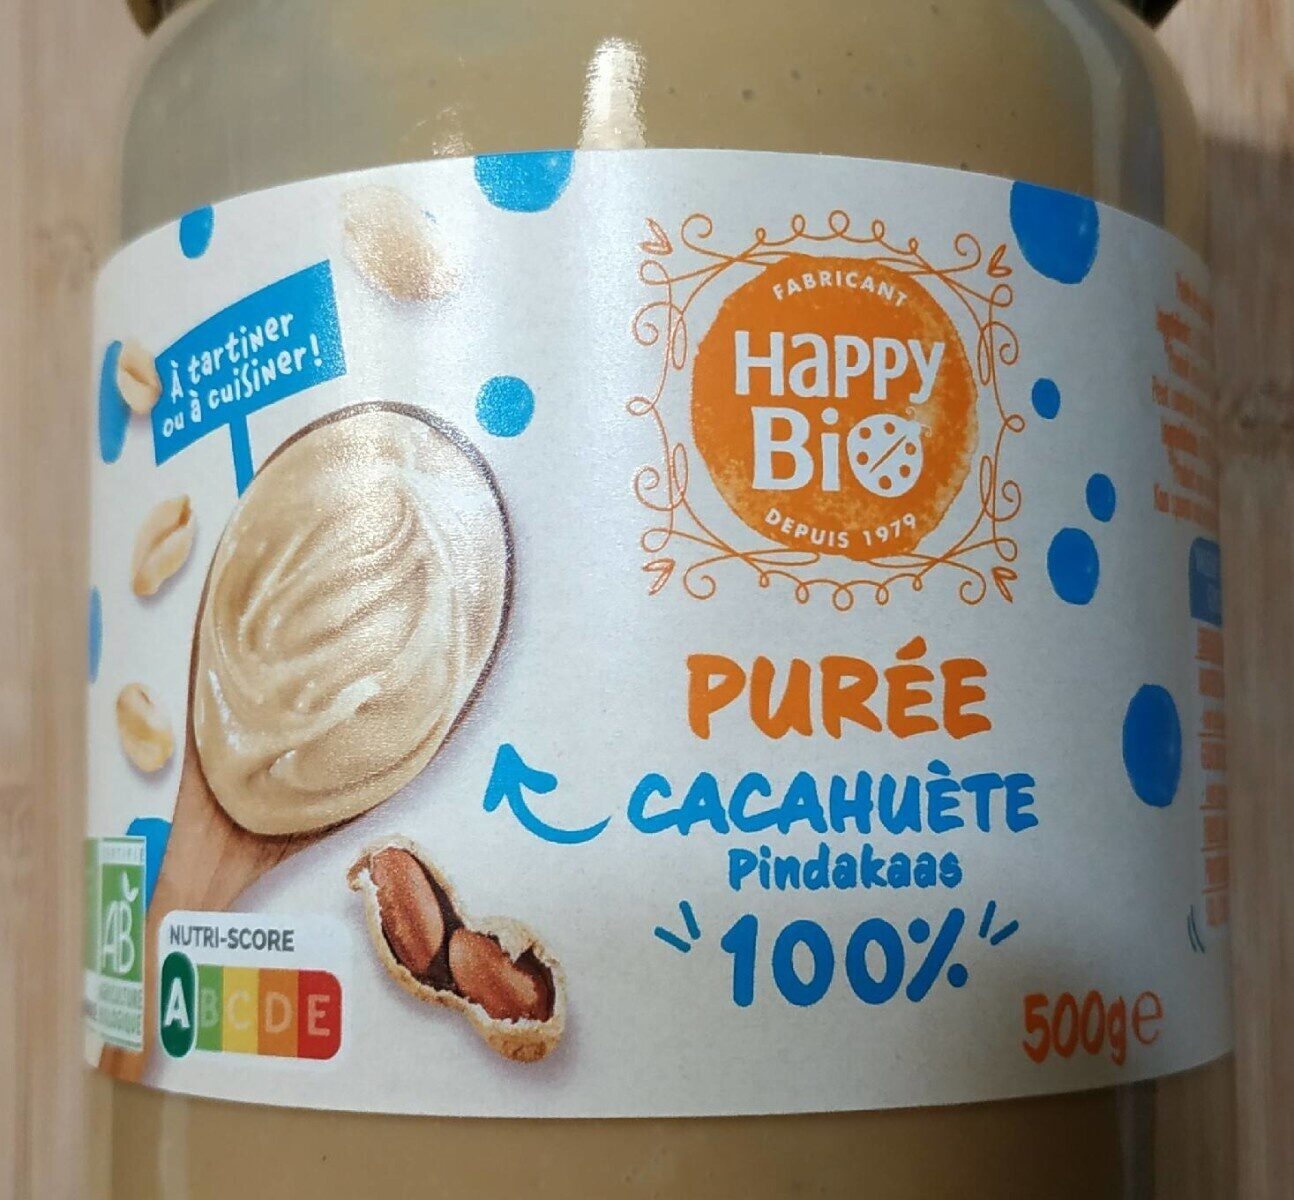 Purée de cacahuète - Product - fr